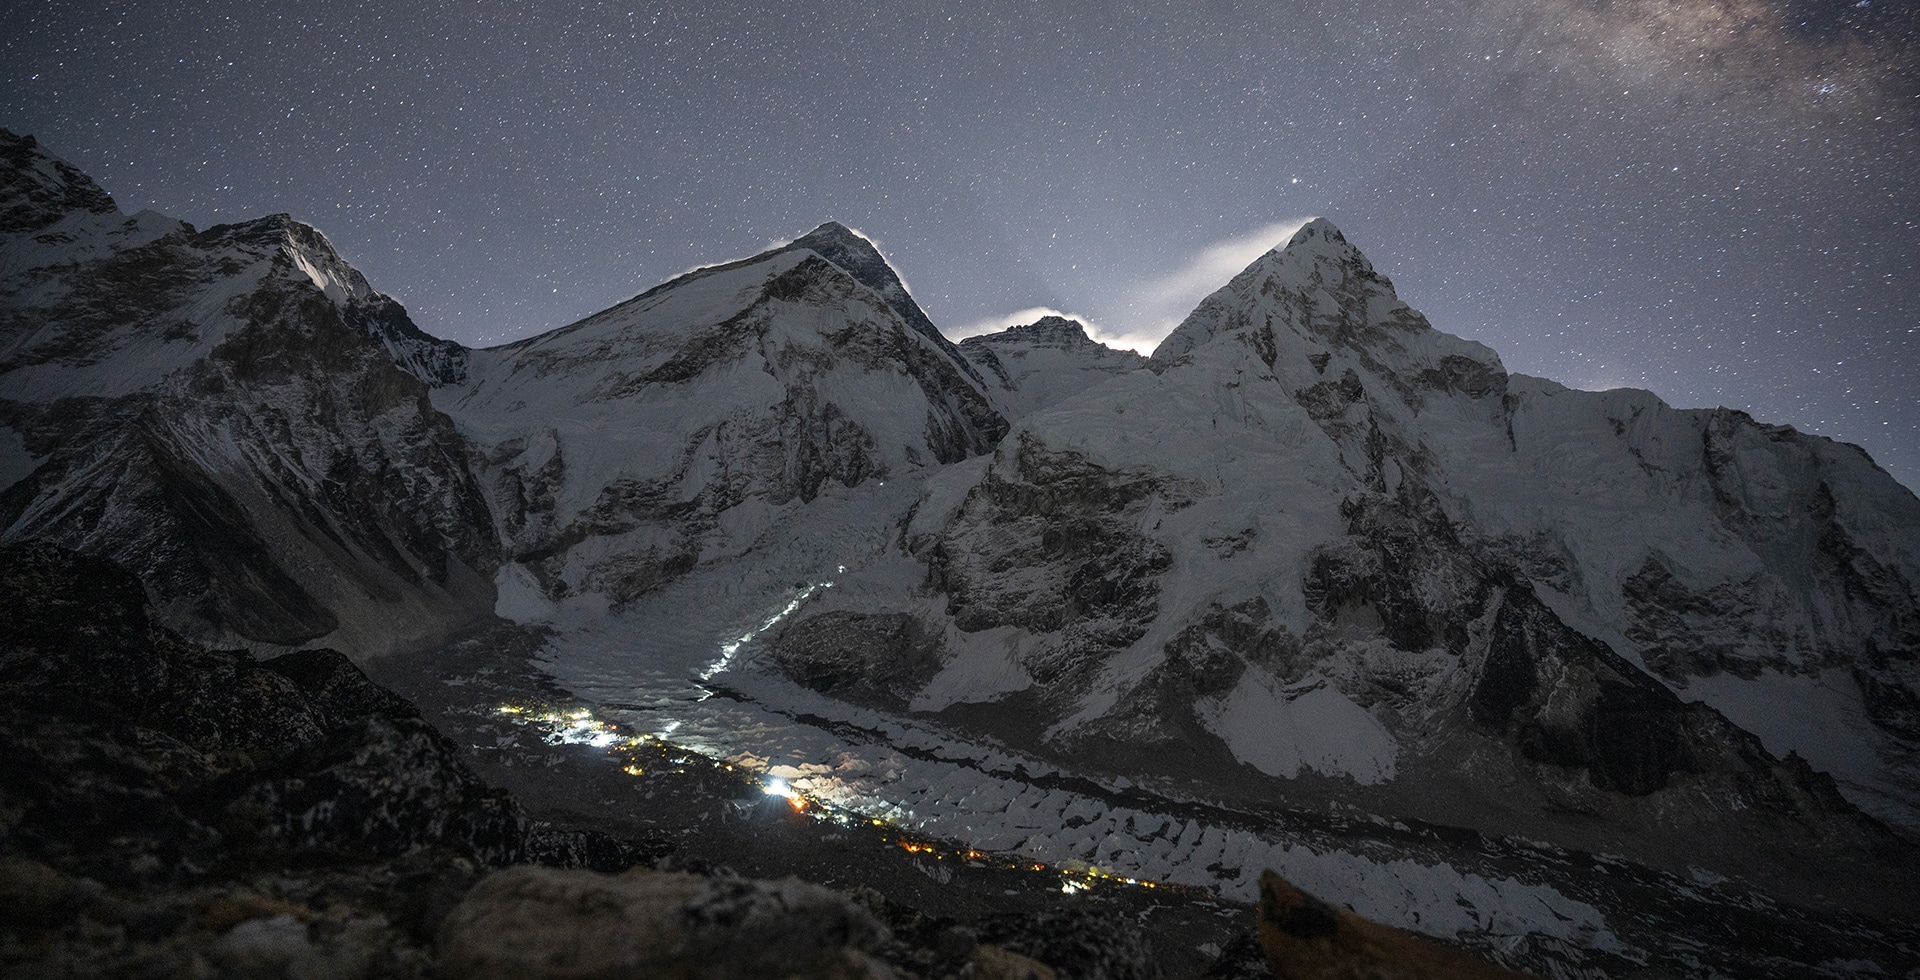 エベレスト山頂のセンサーが気候変動に関する新たな見識をもたらす